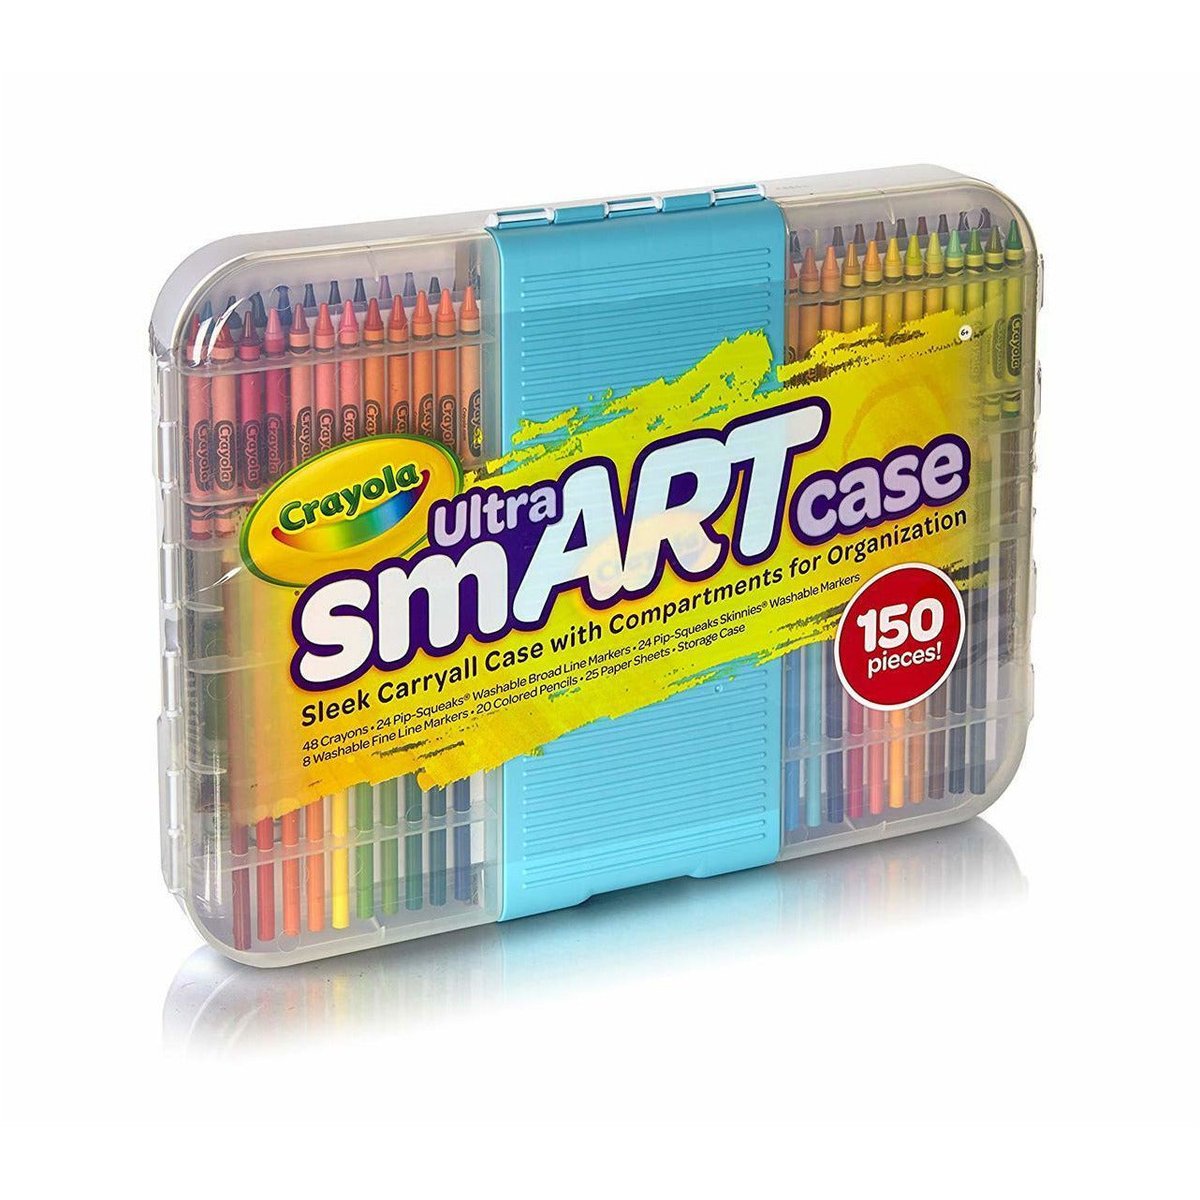 Crayola Crayons, 8 Count (Case of 48)